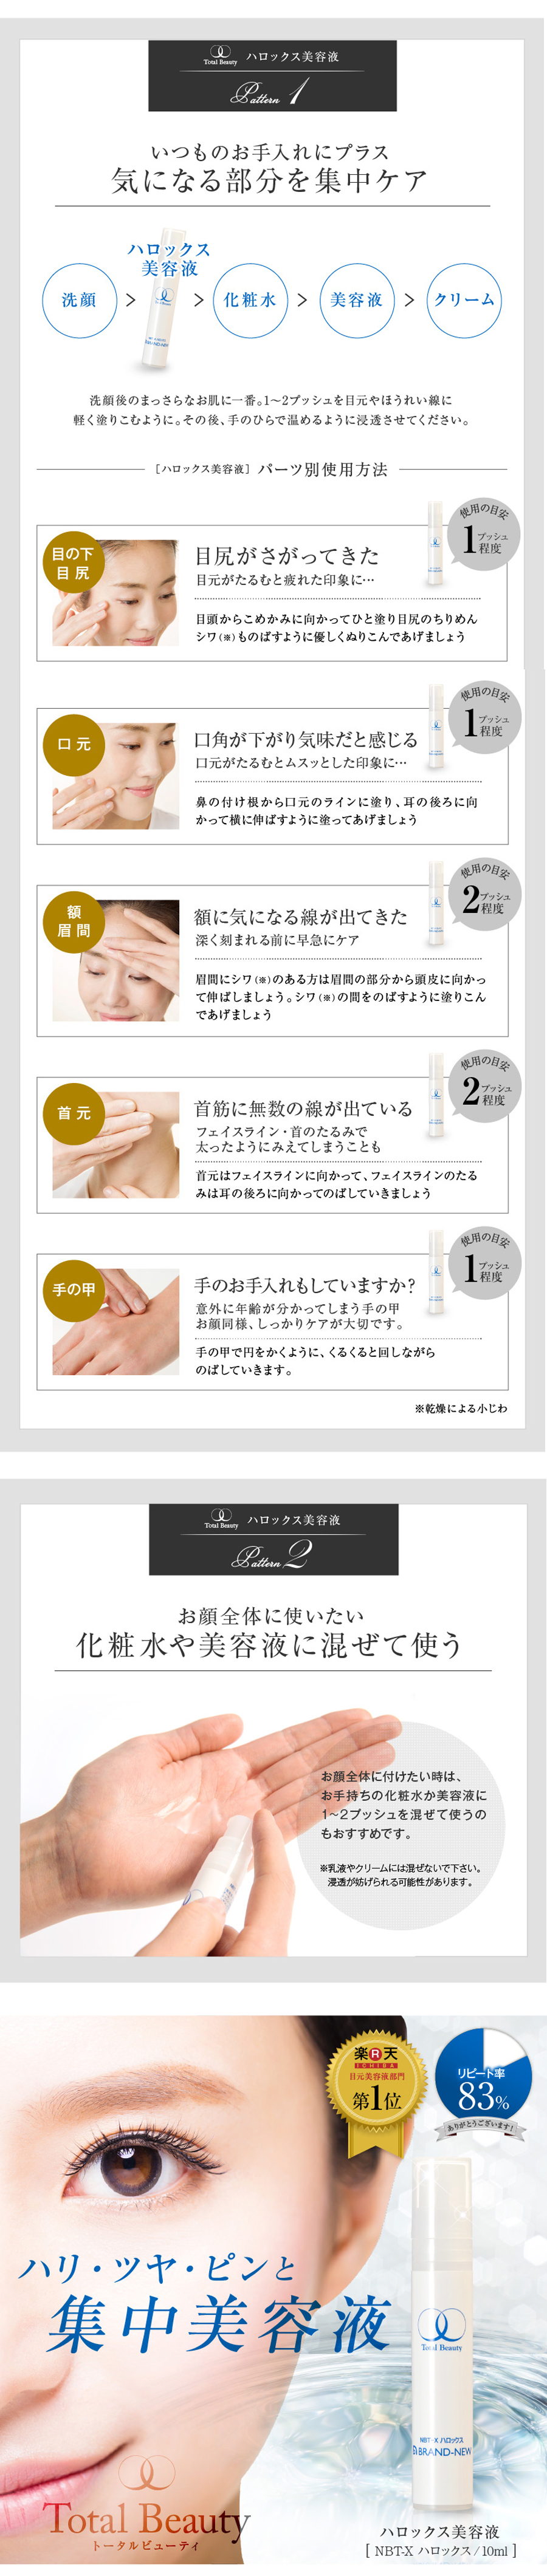 美容液 トリプルエッセンス 30ml モルティーカラ 高保湿 日本製 新品未使用